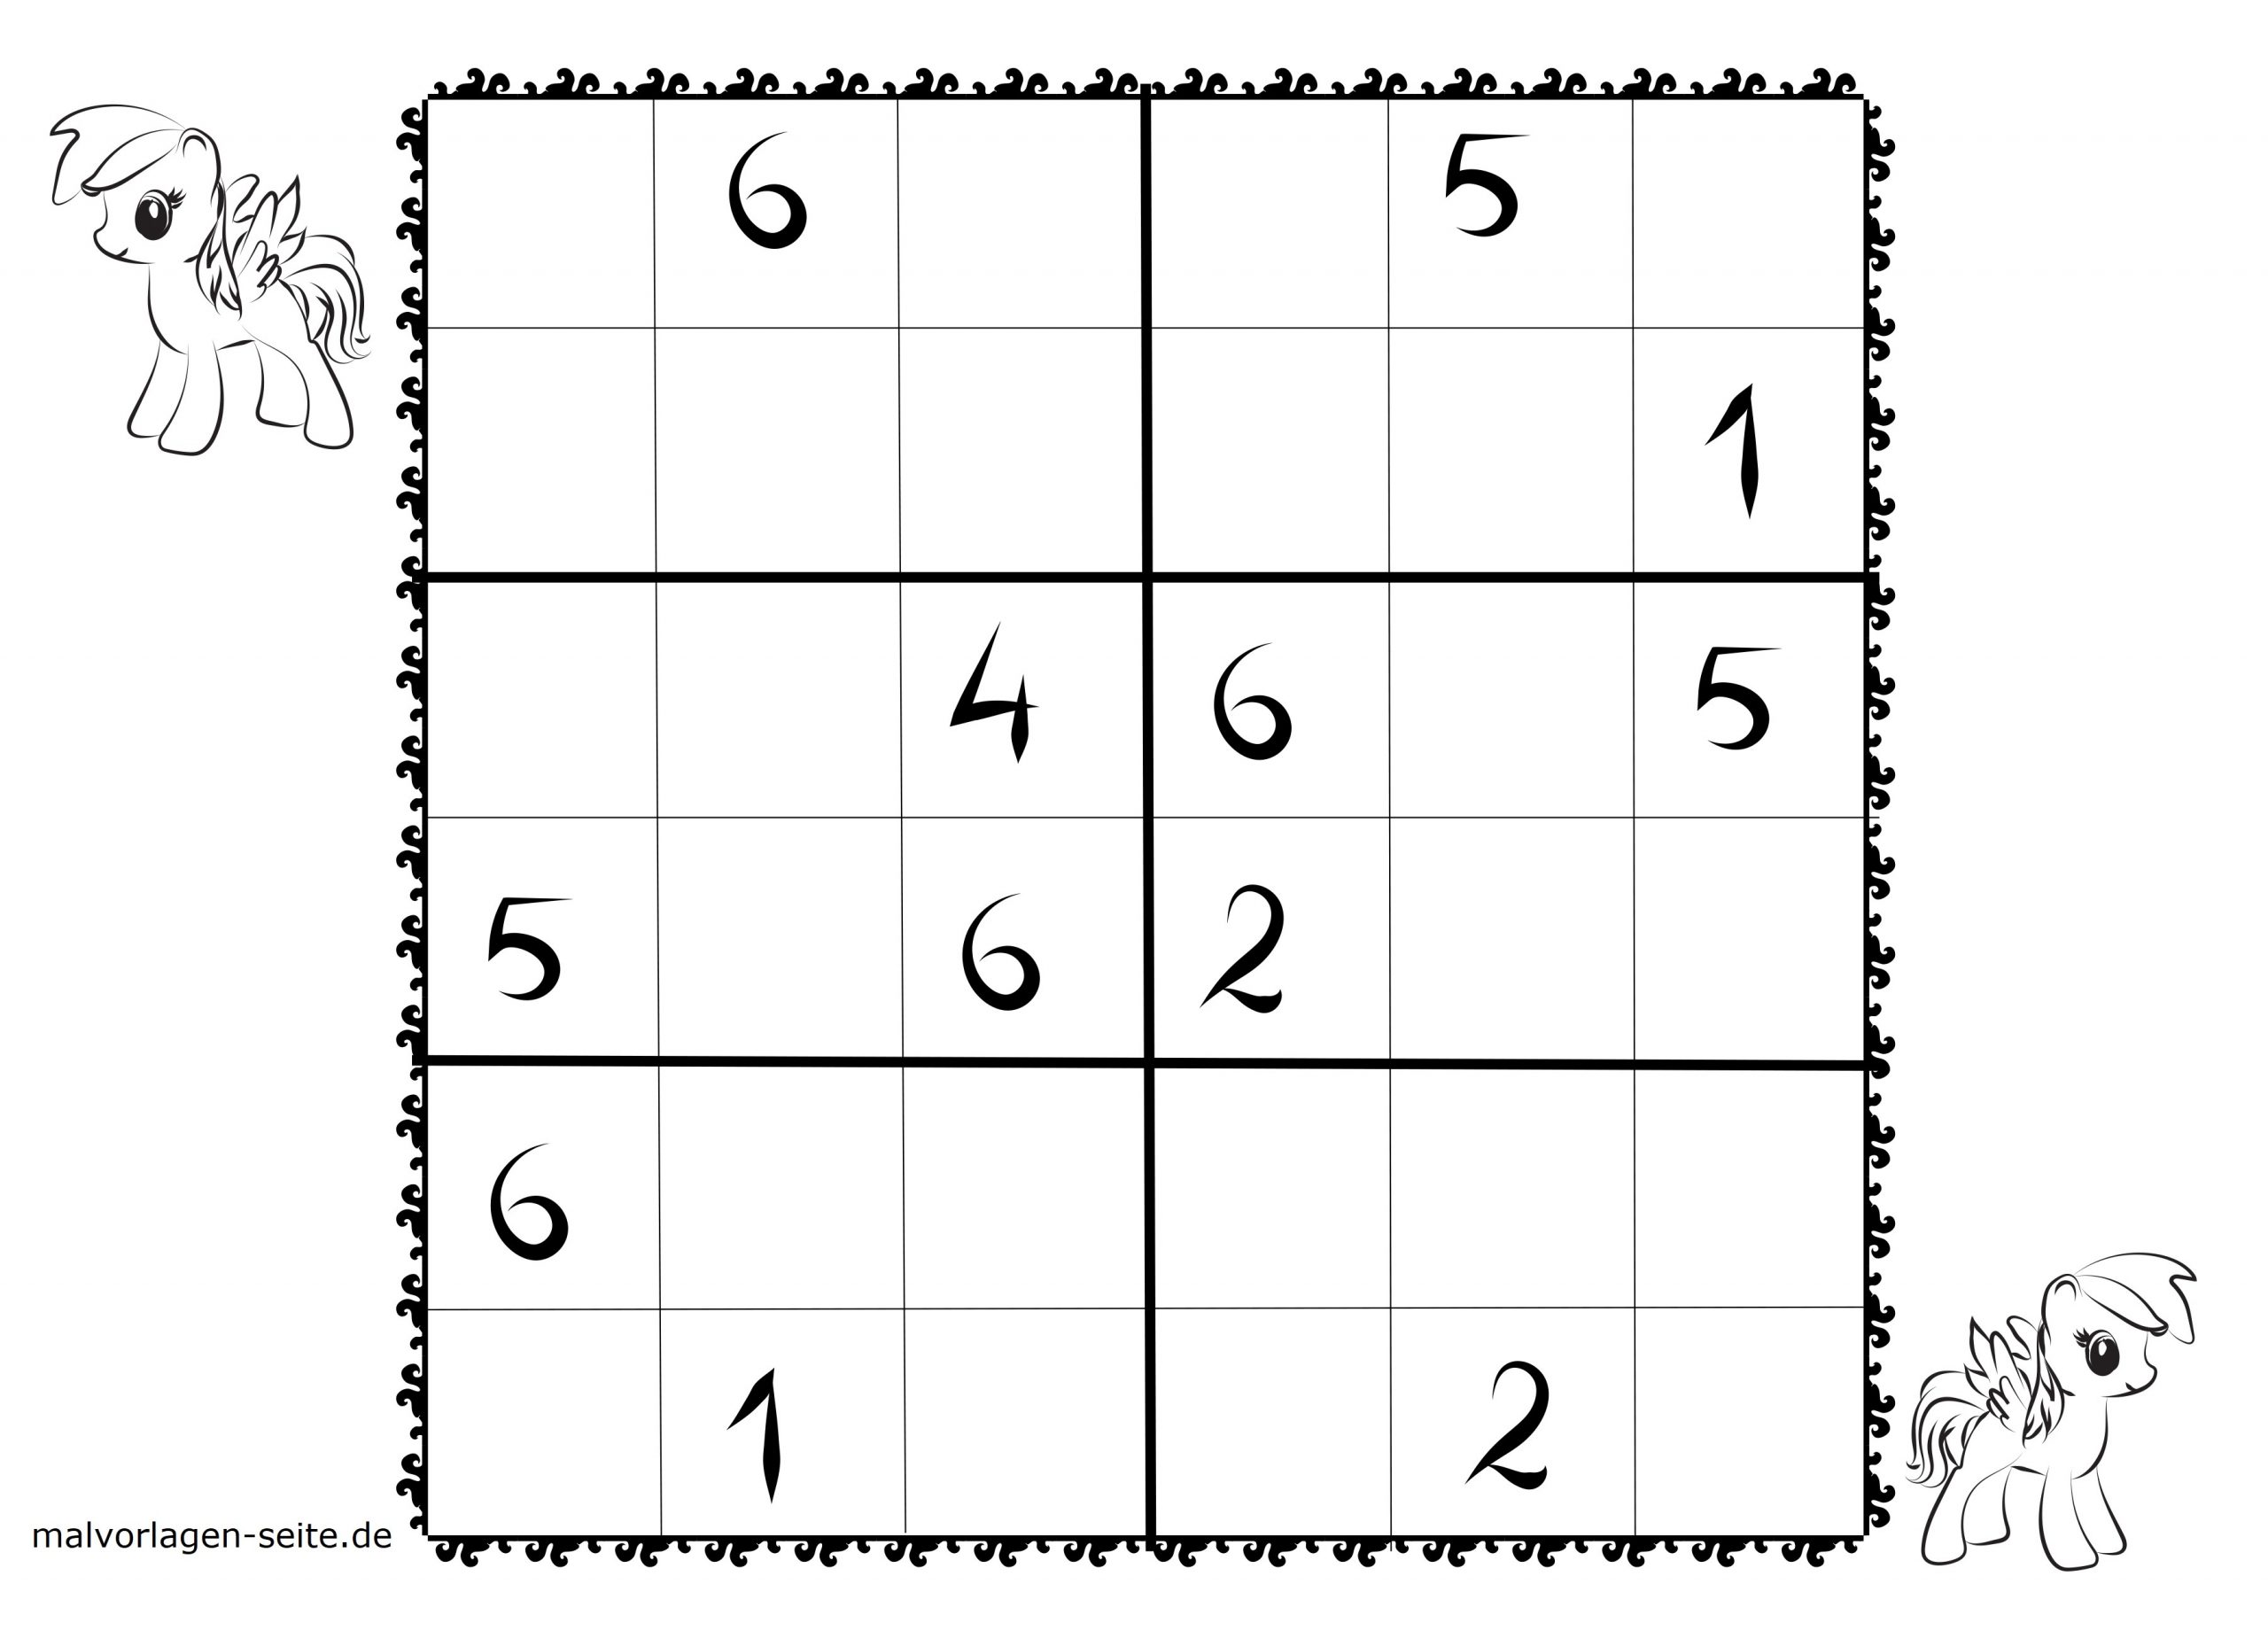 Sudoku Vorlagen Für Kinder 6X6 Kostenlos Herunterladen Und innen Sudoku Schwer Drucken